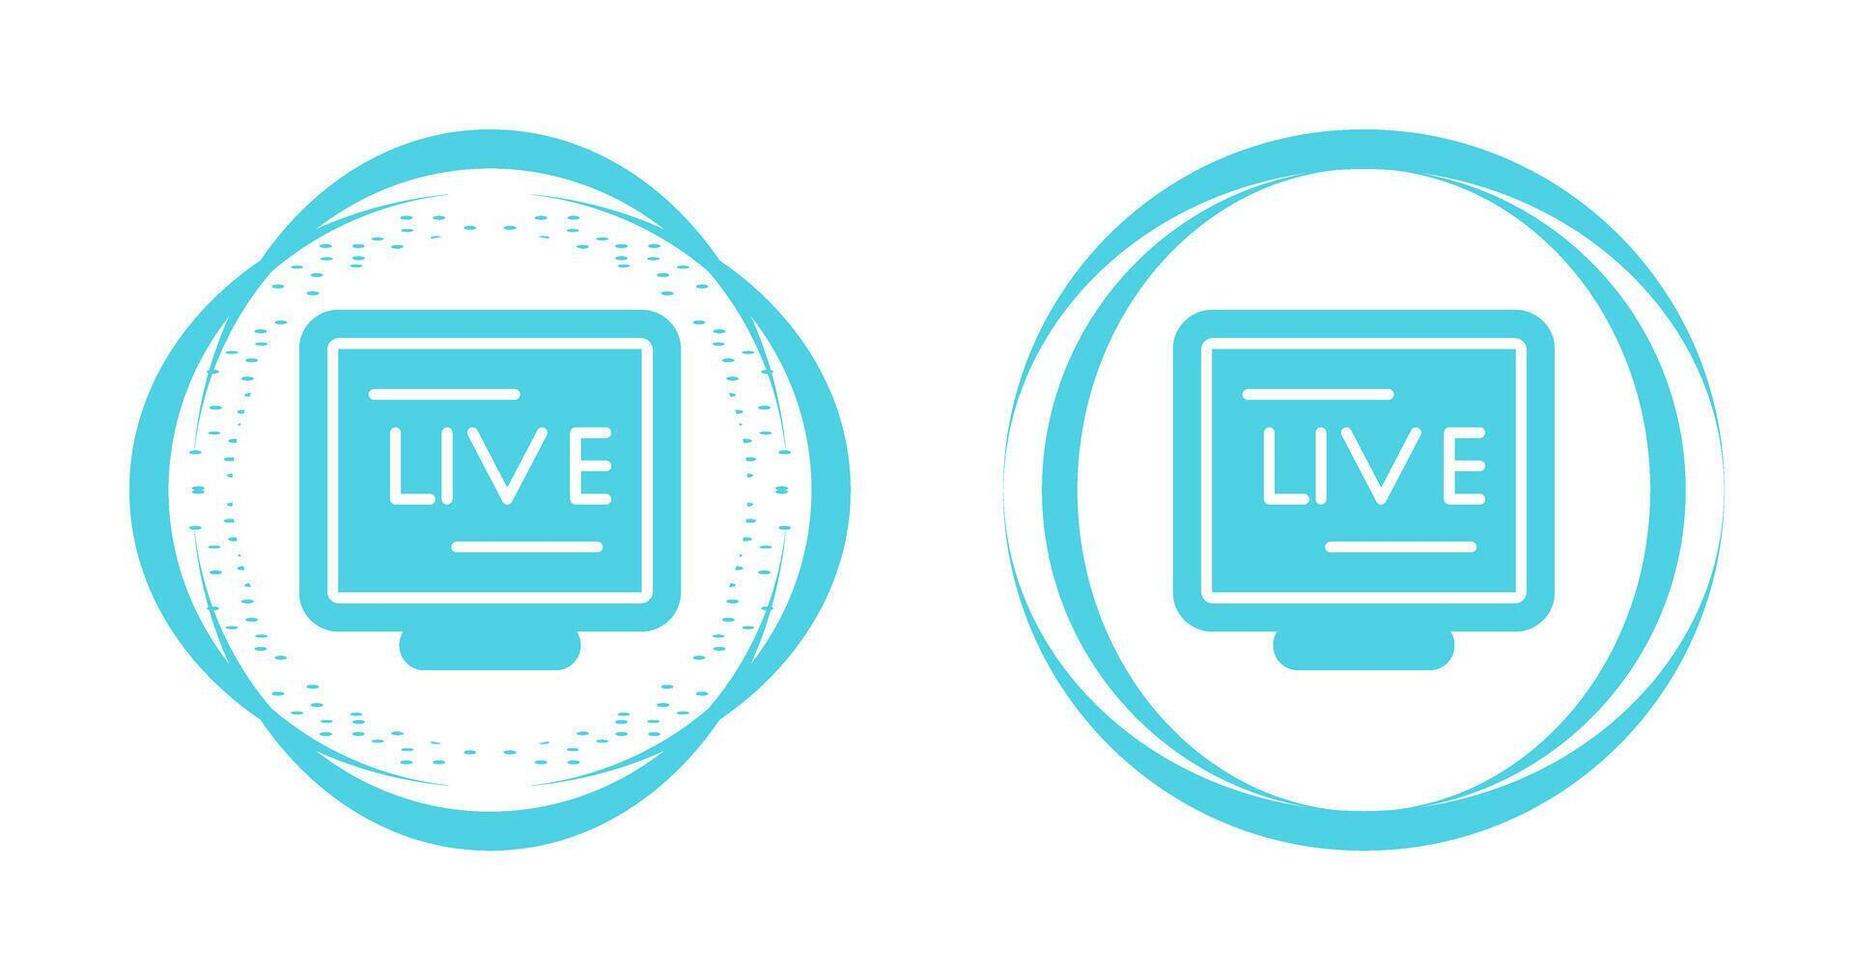 icona del vettore live streaming